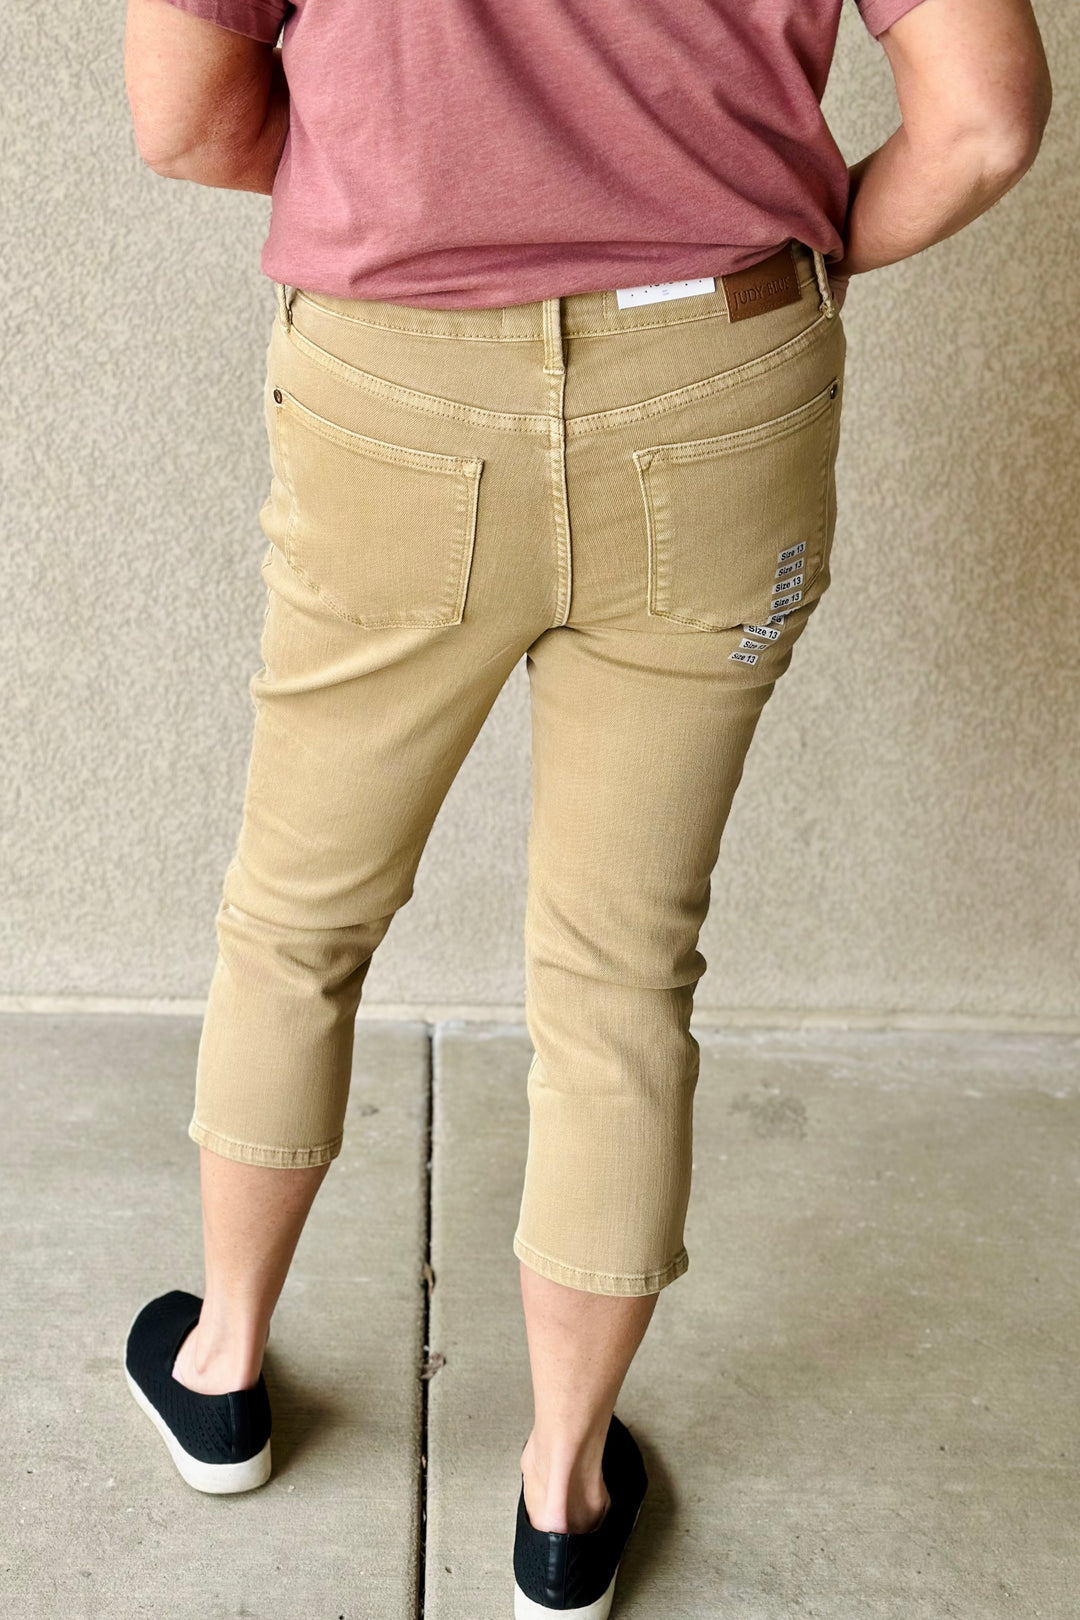 June Garment Dyed Capri Jeans - Khaki